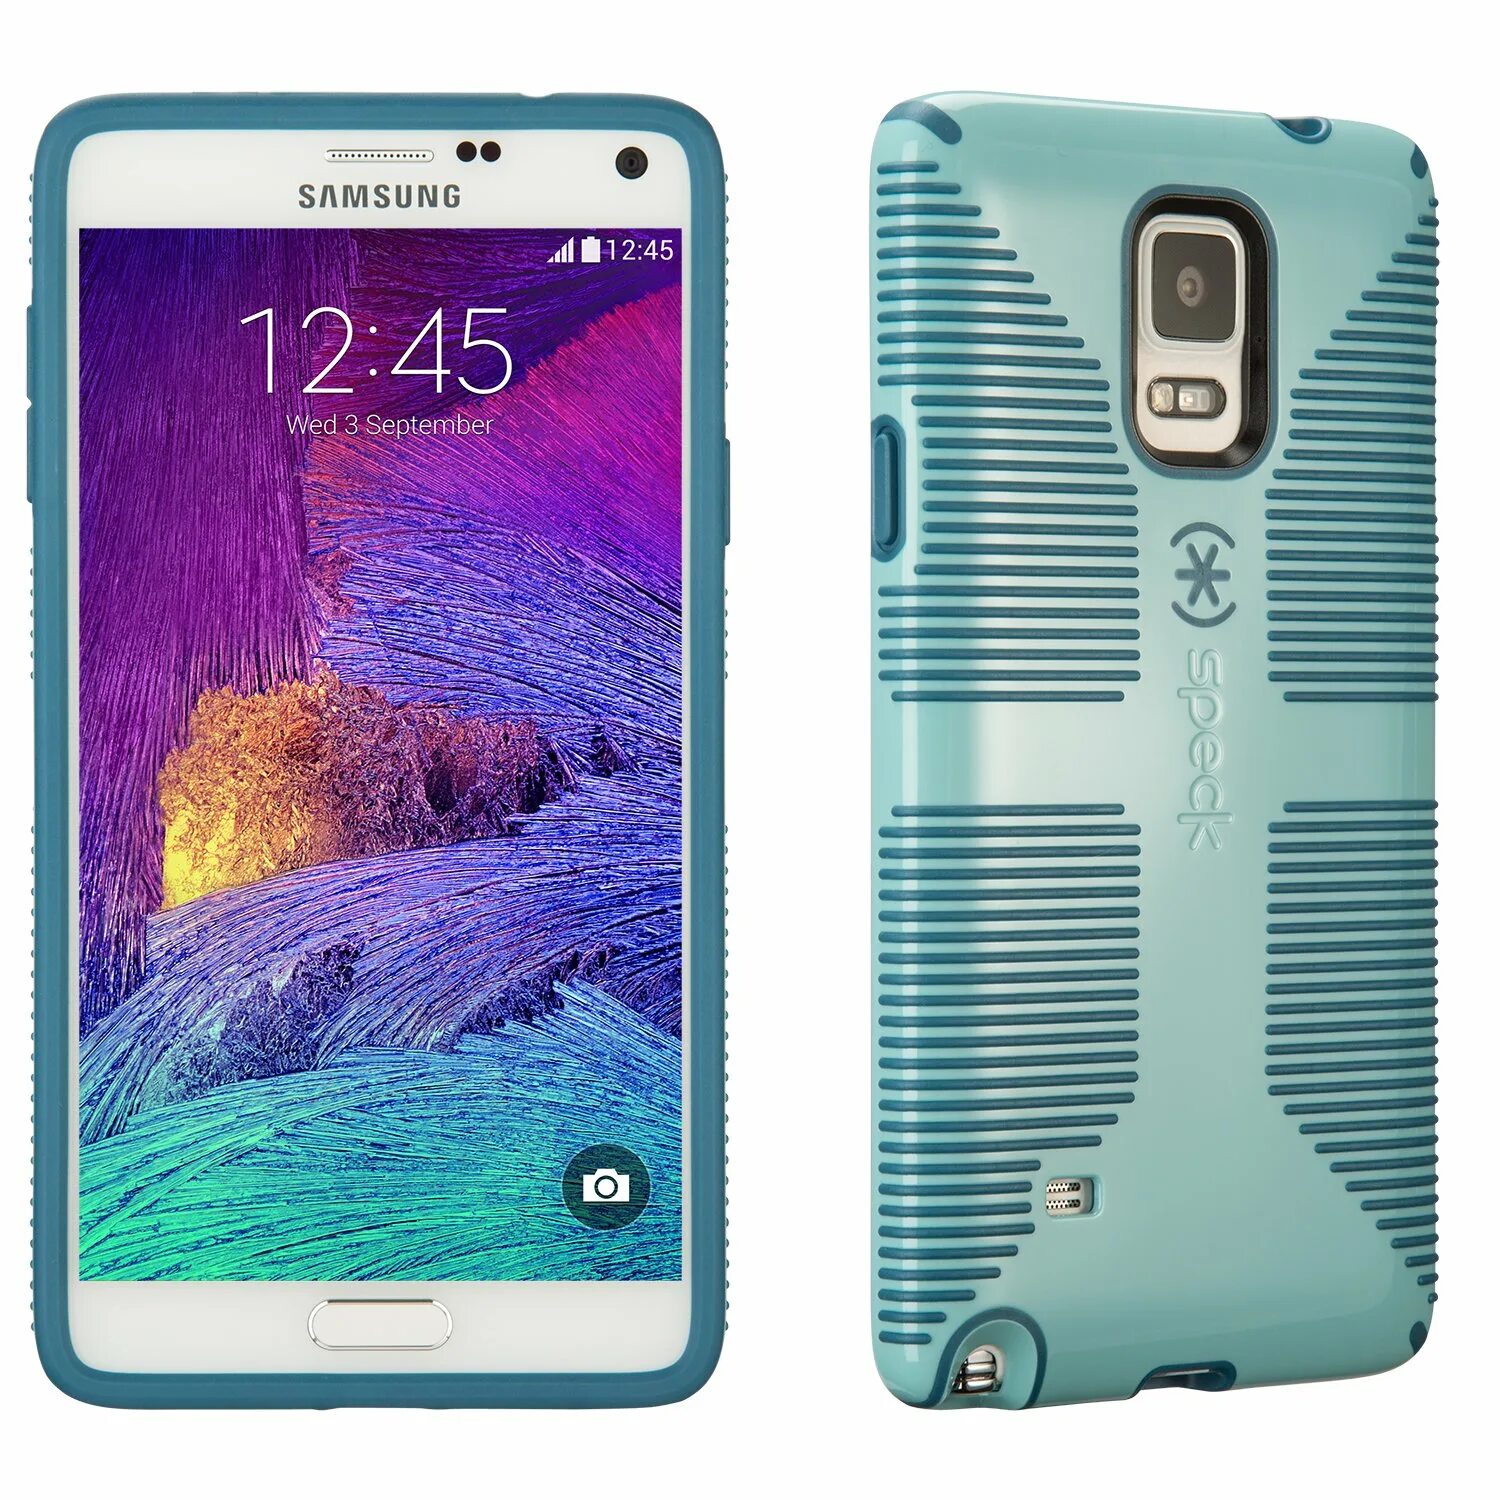 Samsung Galaxy Note 4. Samsung Note 4 Case. Samsung Galaxy Note 4 Edge. Samsung Galaxy Note 4 бампер.